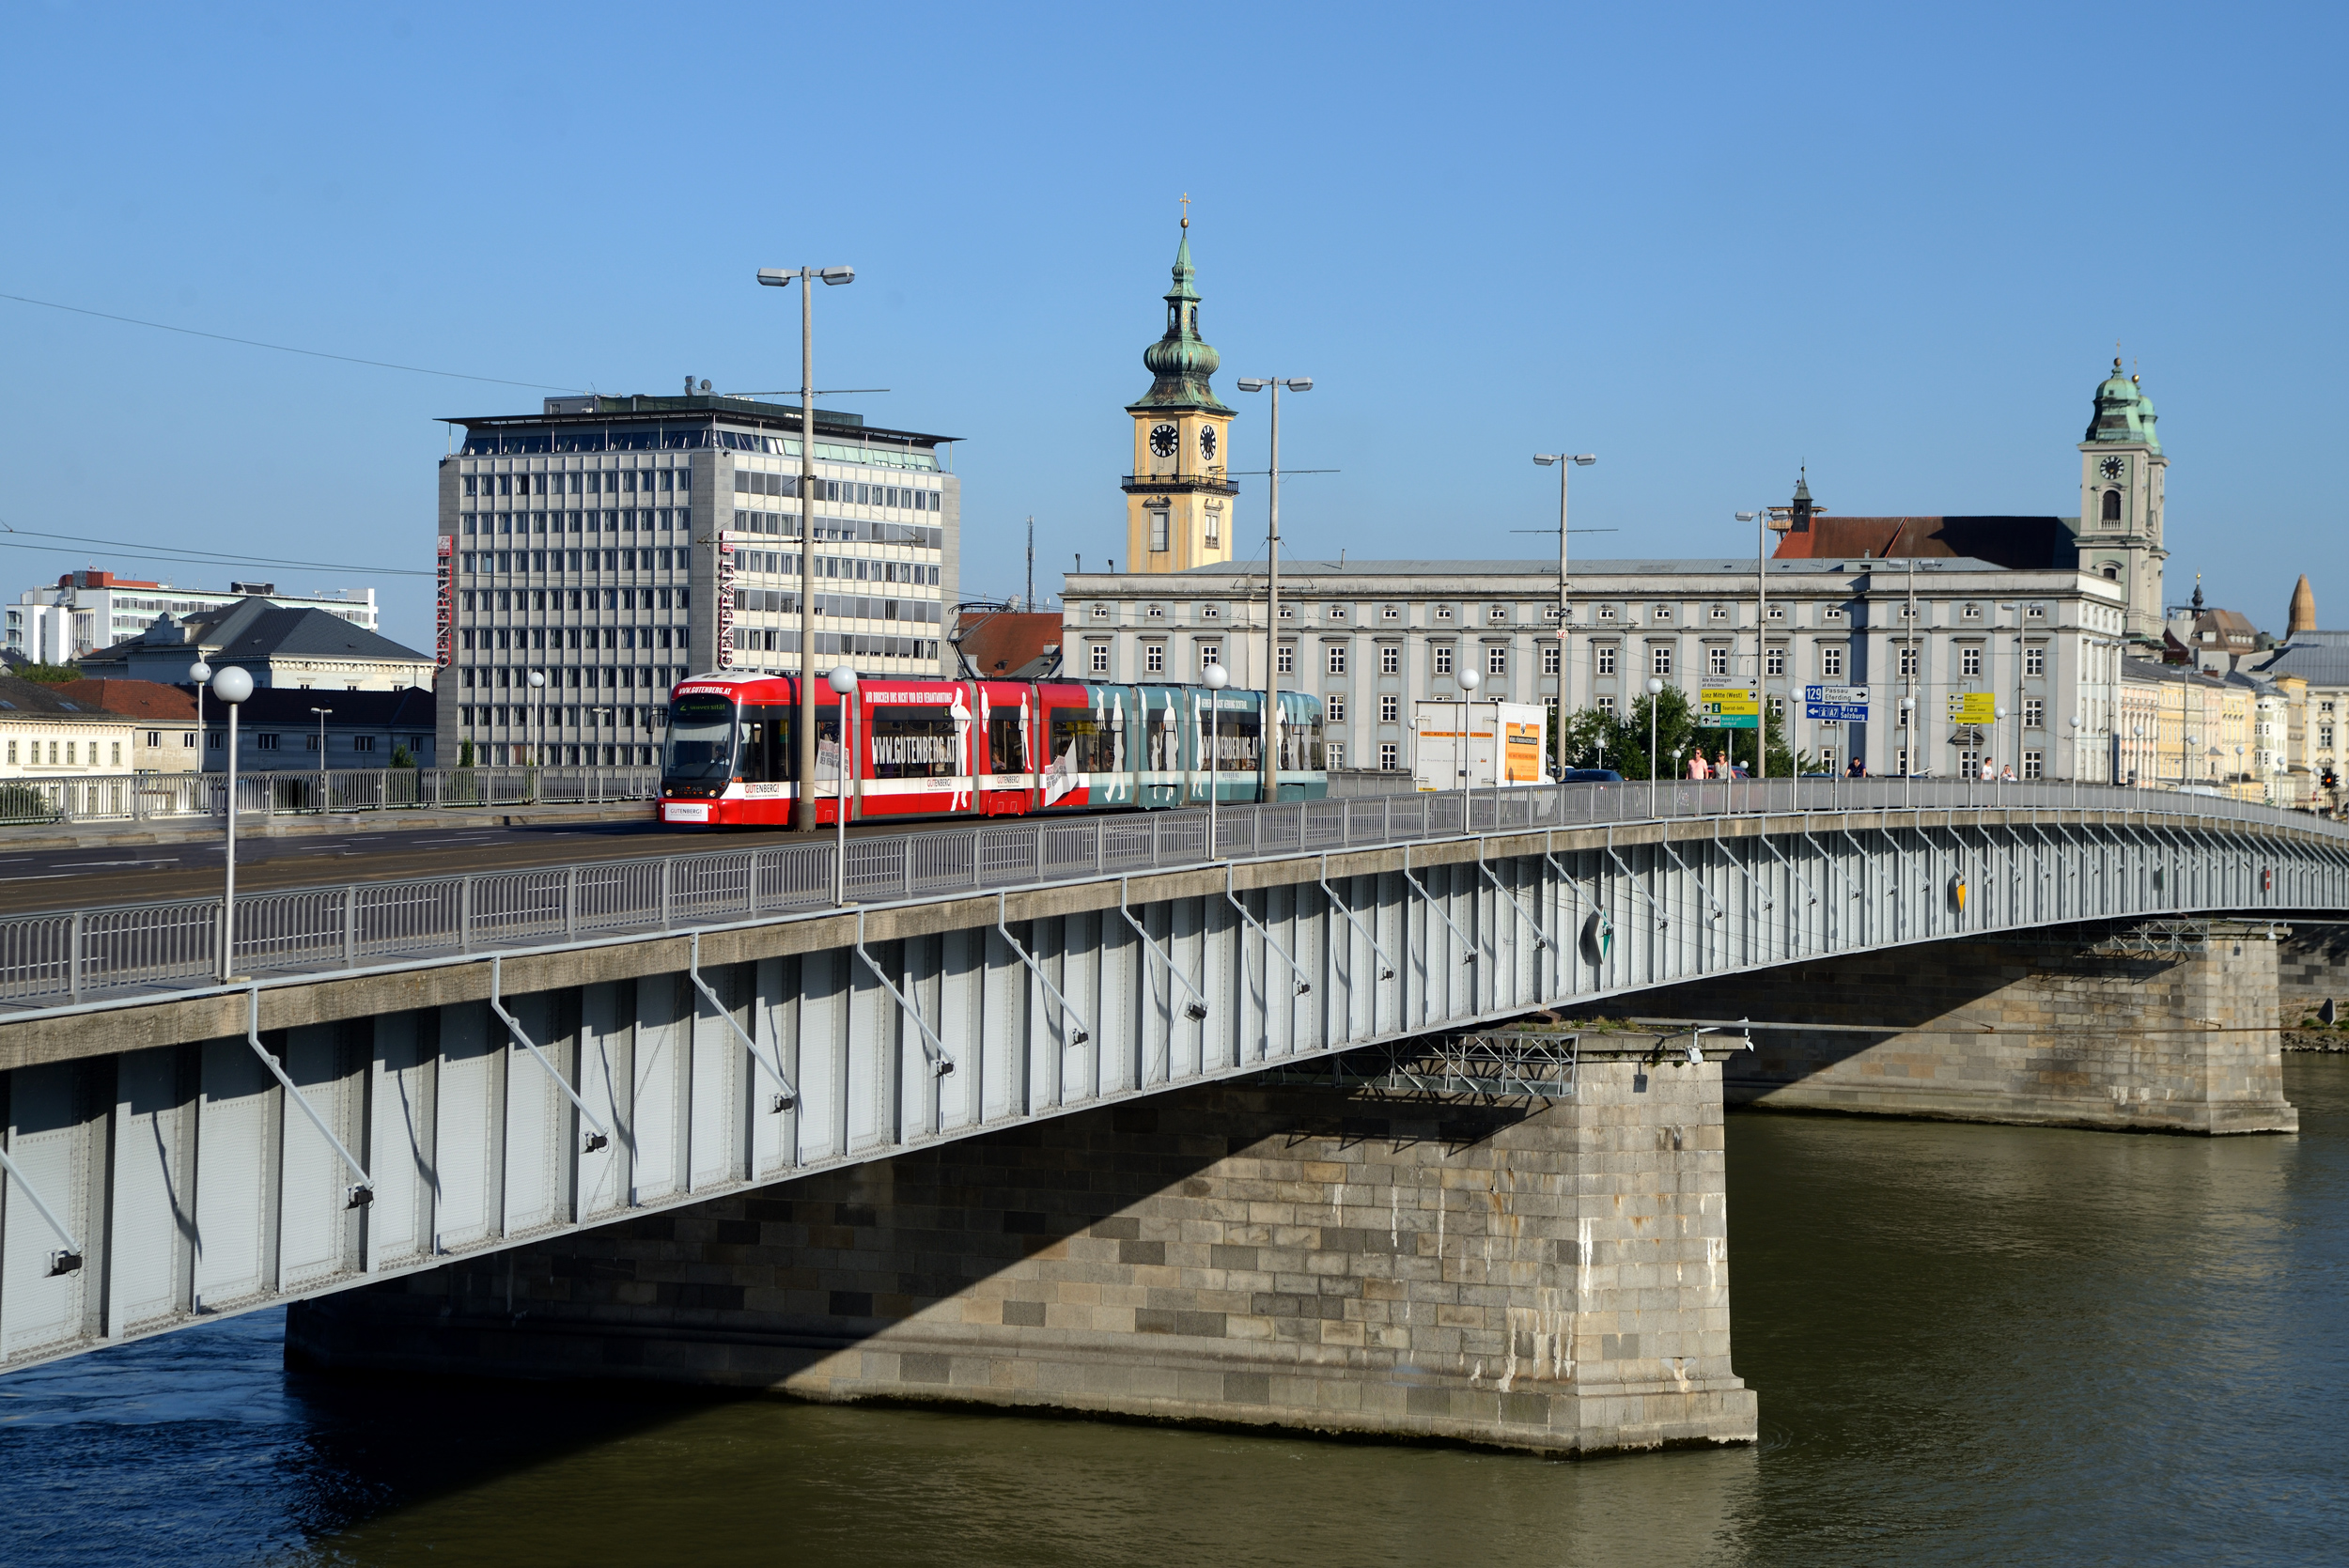 Tram Linz Cityrunner Nibelungenbruecke